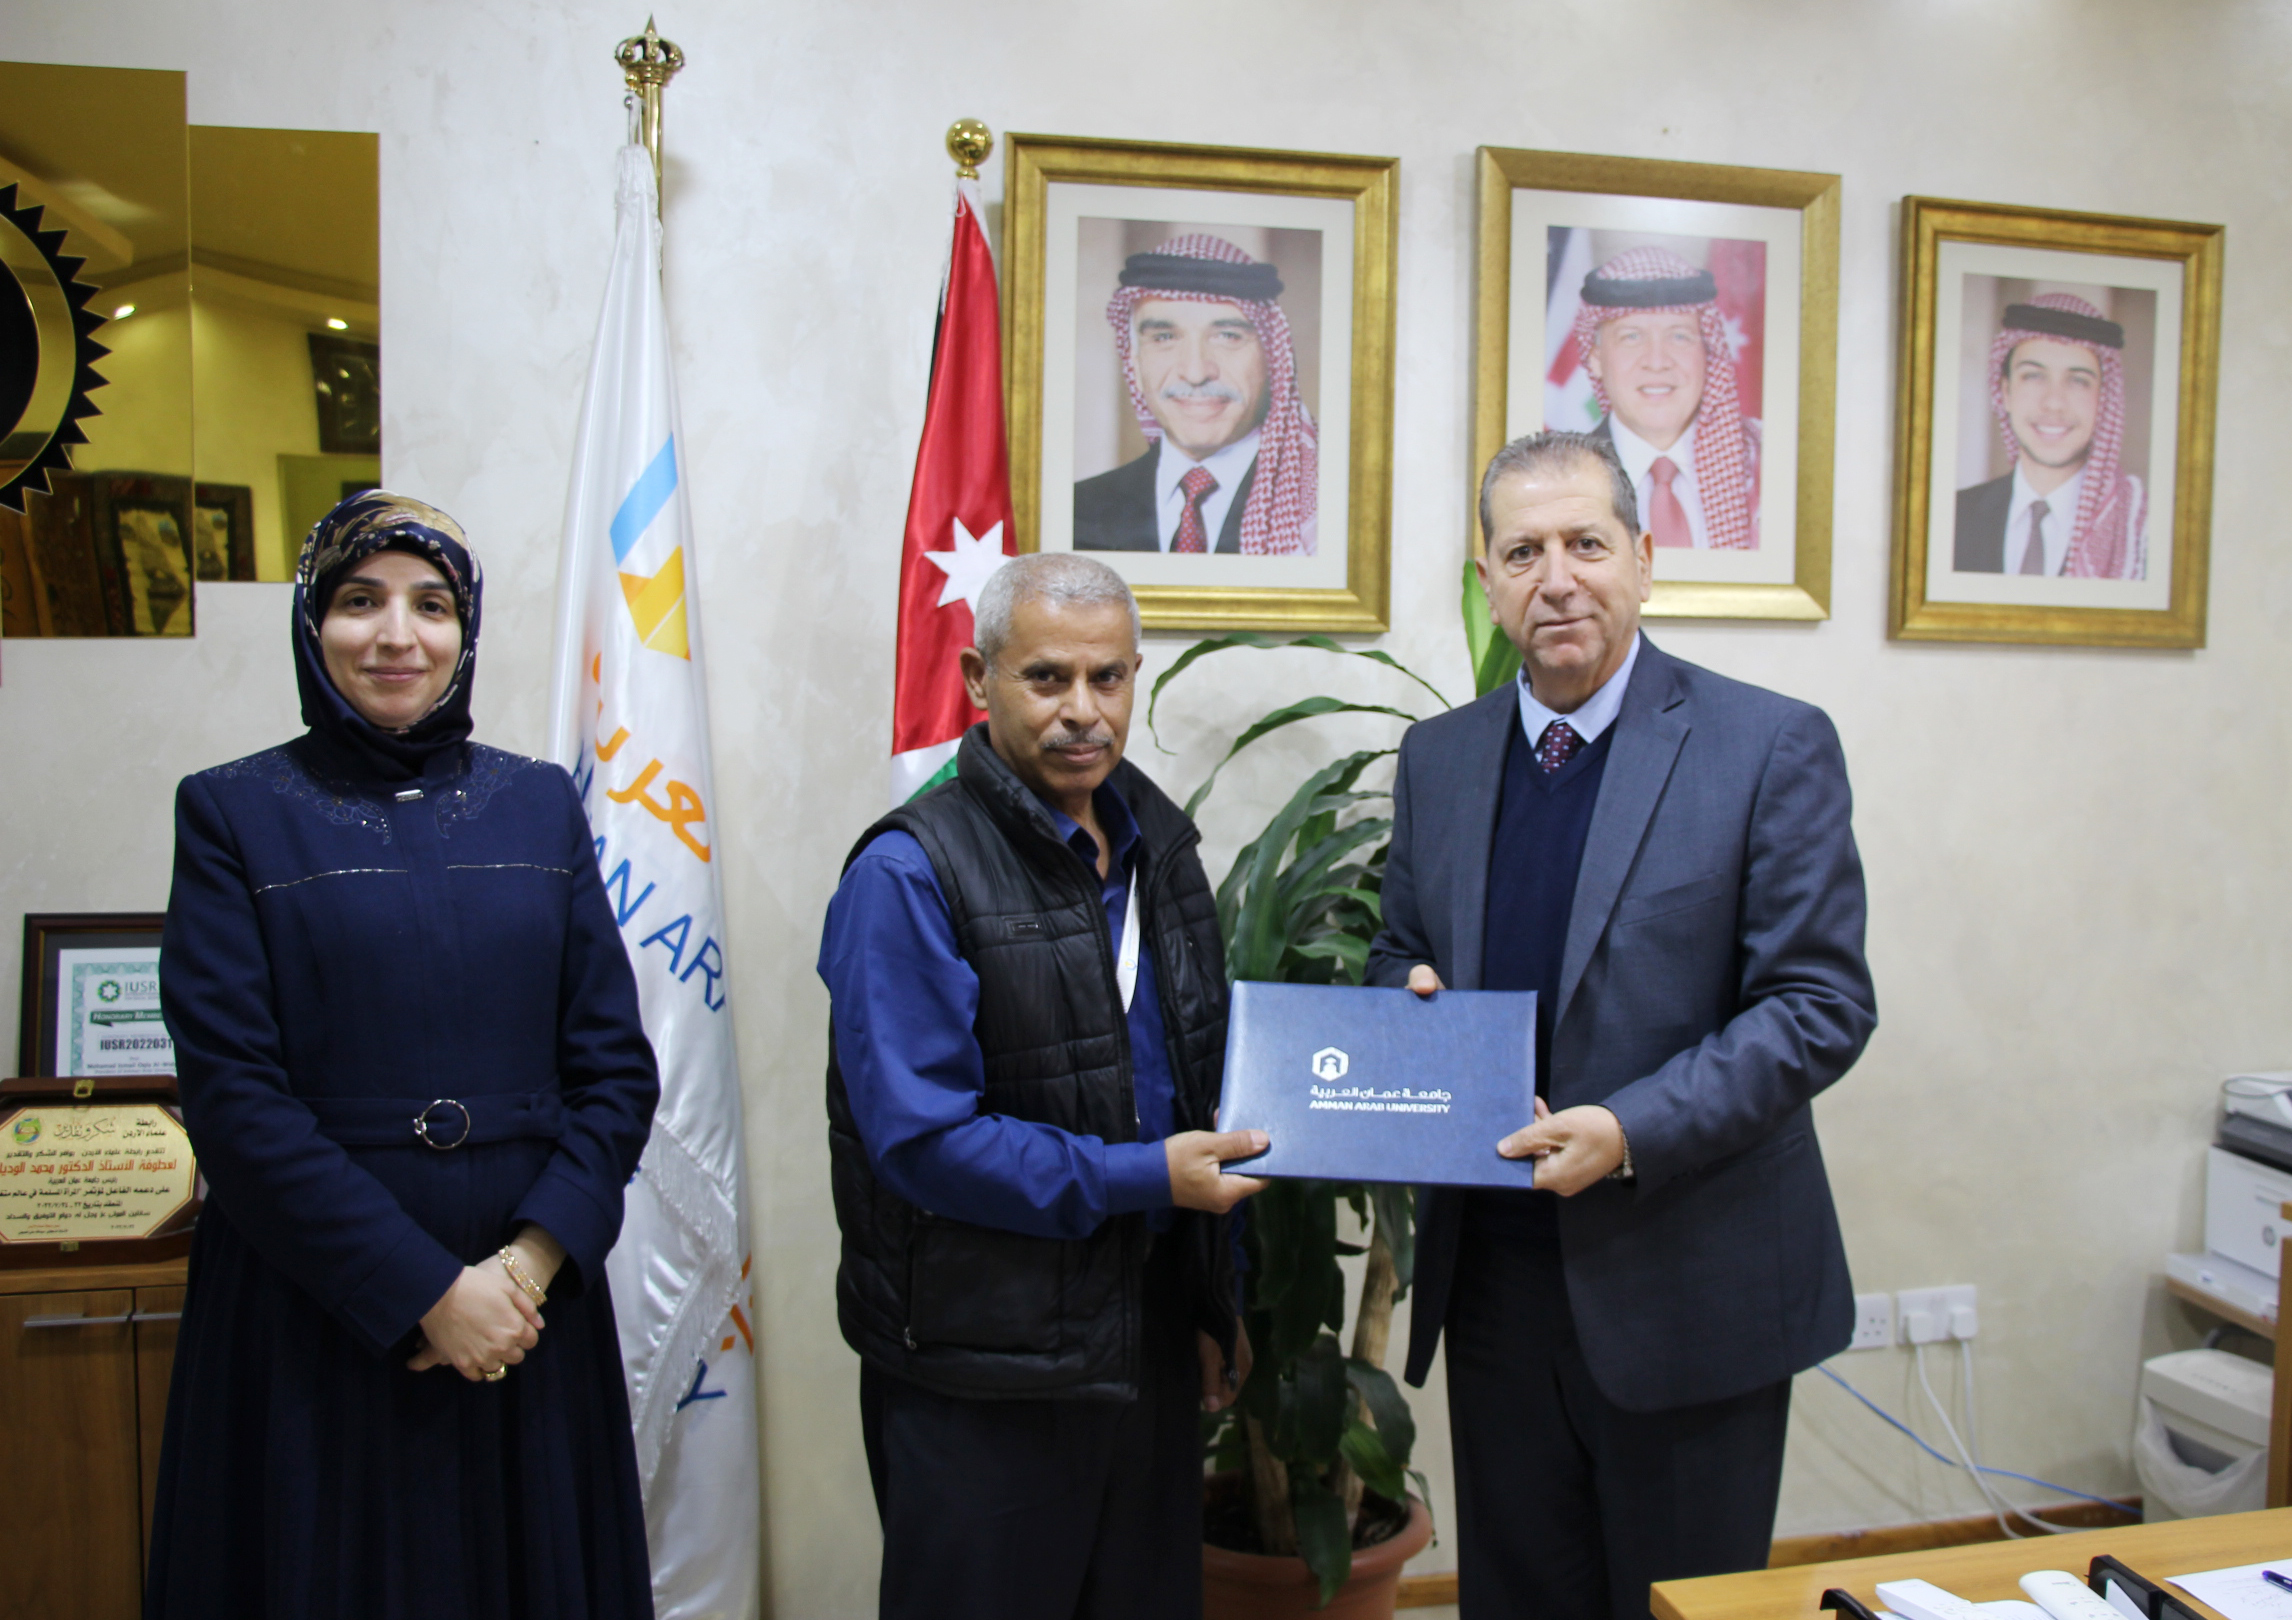 جائزة الموظف المتميز في عمان العربية لـ "عبد الرحمن أبو جعفر" و" عائشة الزواهرة"1